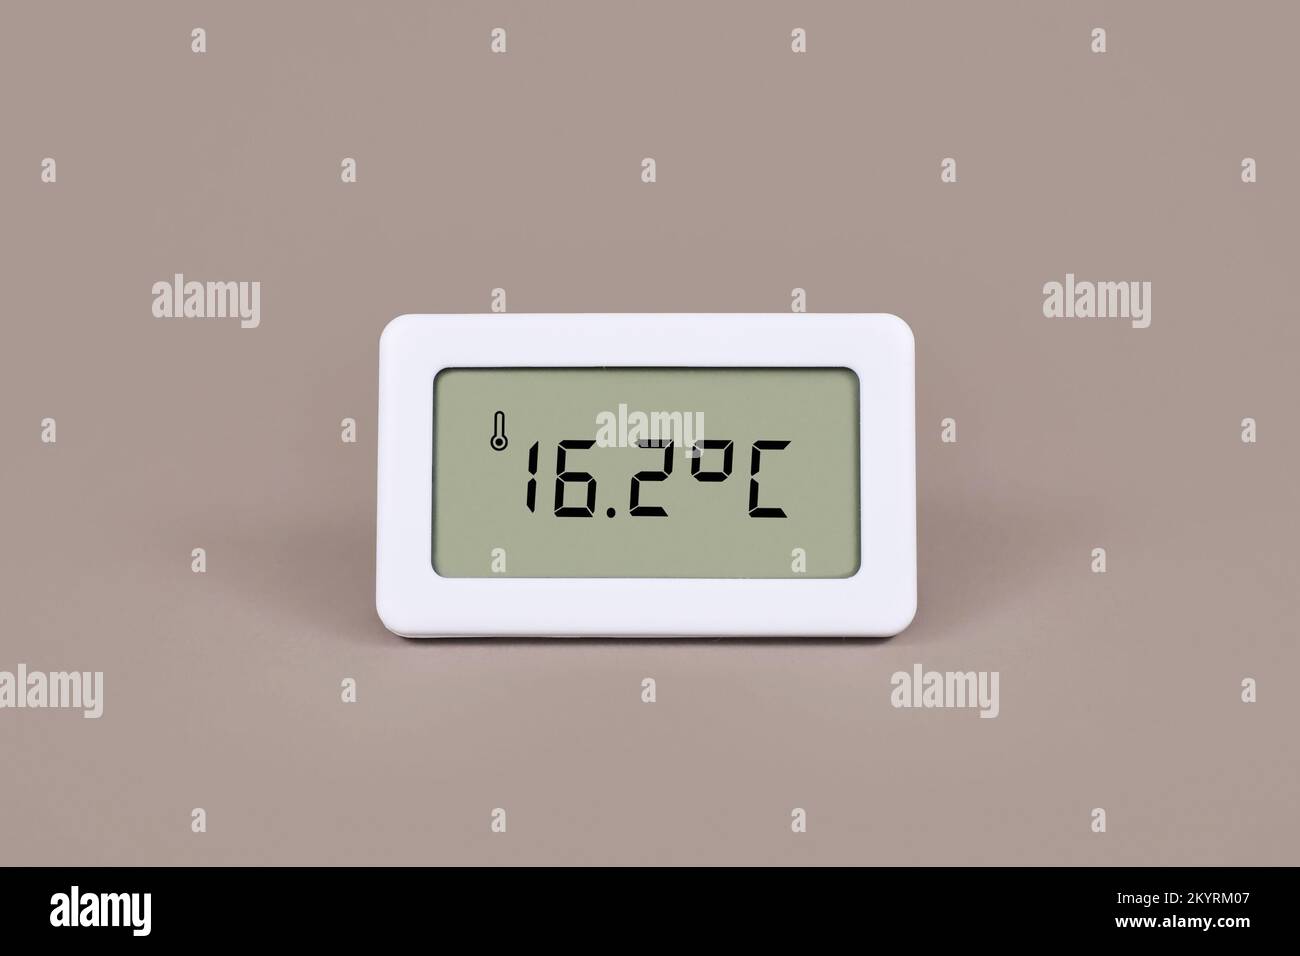 Termómetro digital que muestra una temperatura ambiente fría de 16,7 grados centígrados Foto de stock